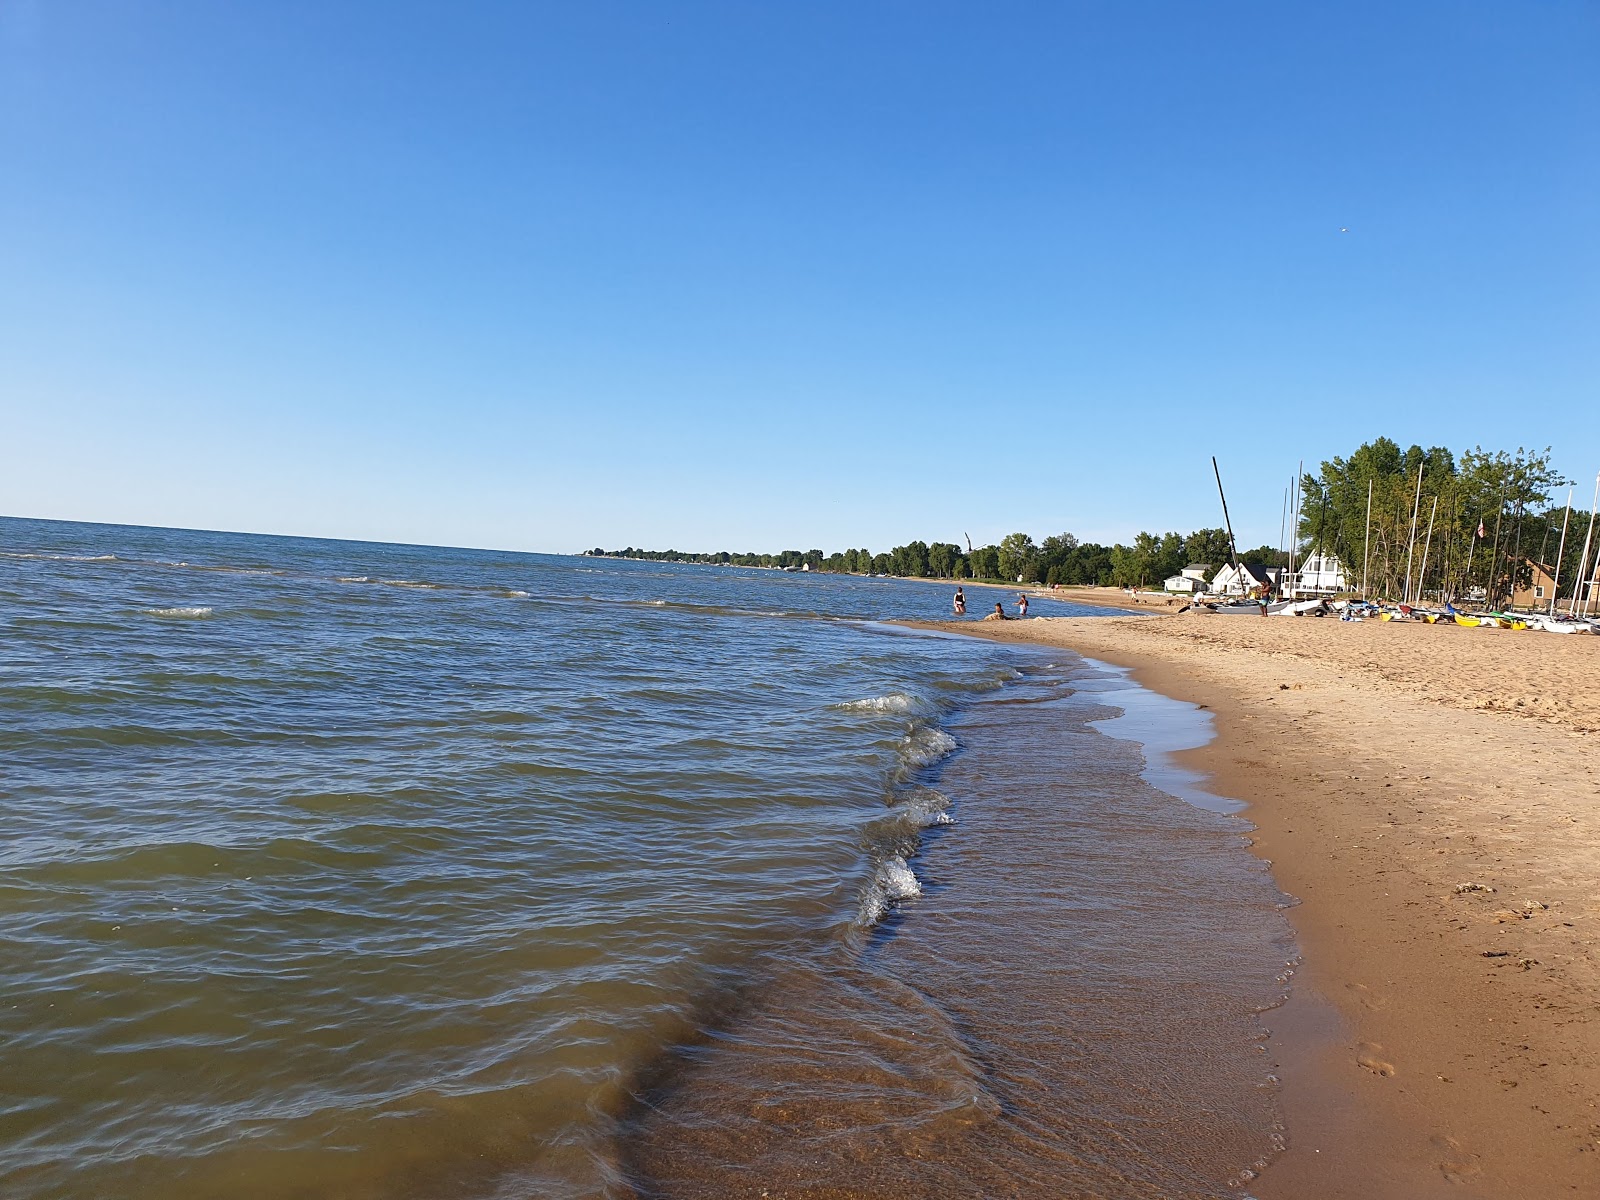 Fotografie cu Caseville County Park Beach - locul popular printre cunoscătorii de relaxare